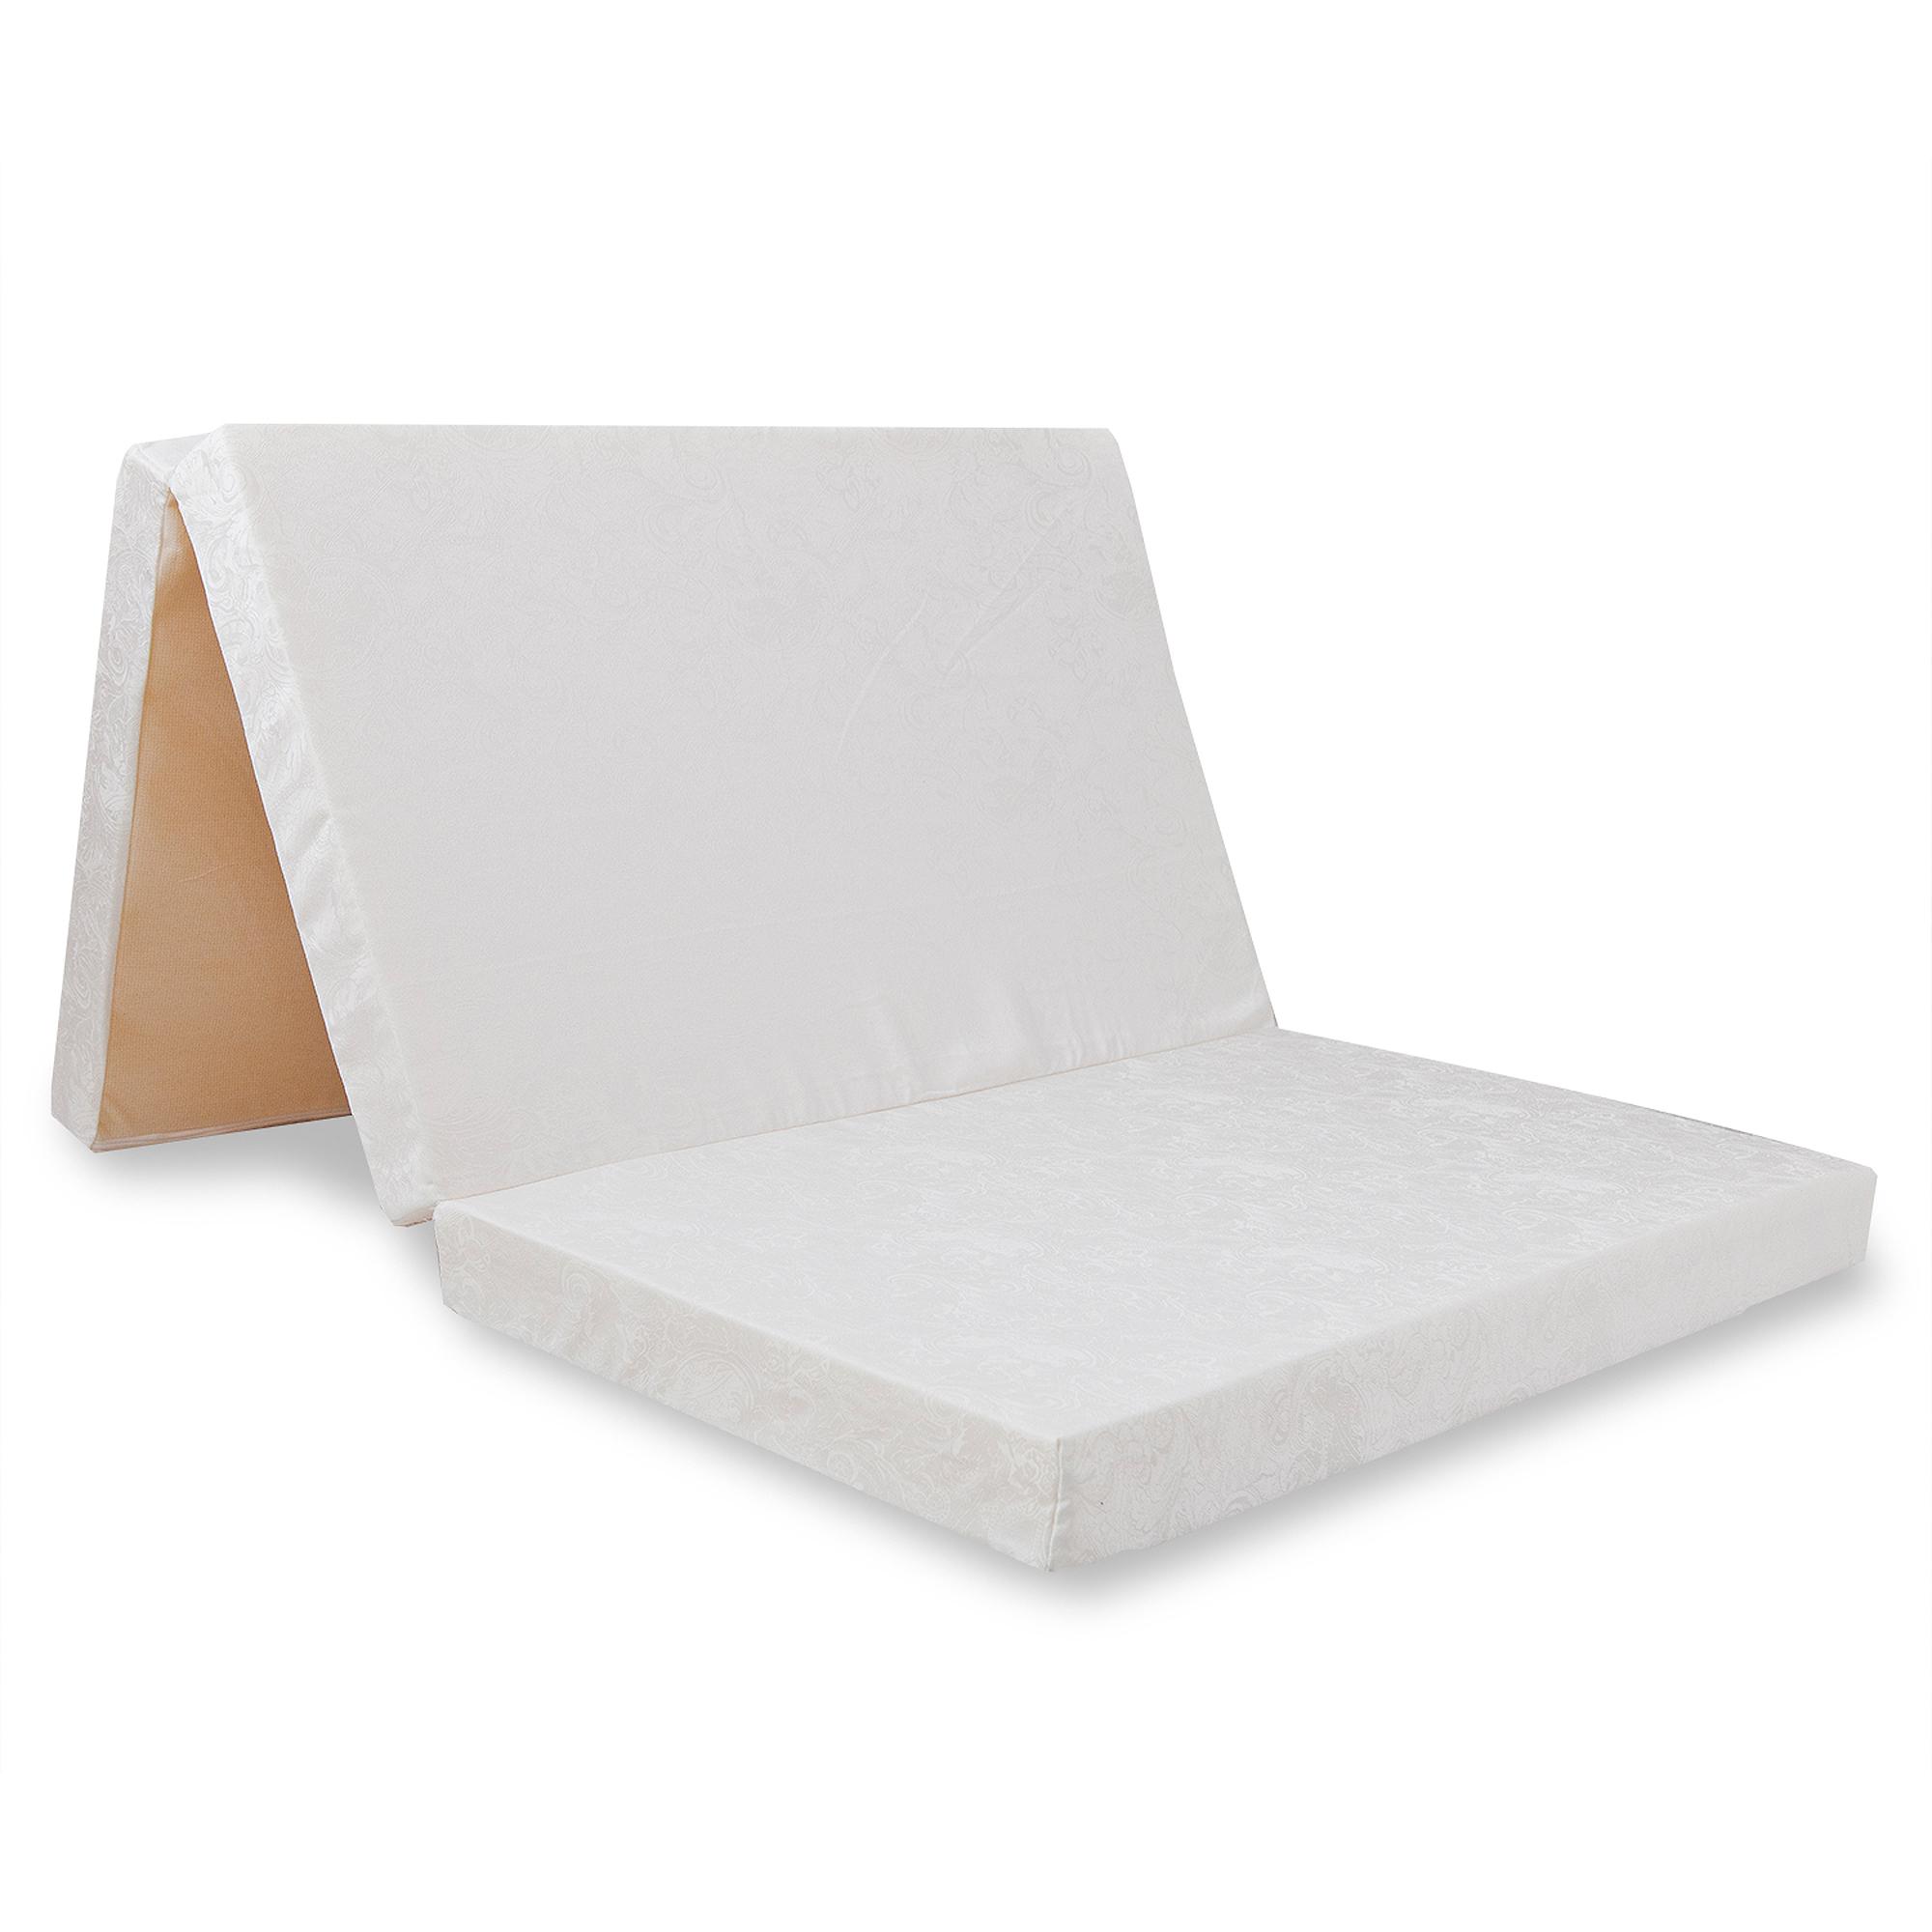 El colchón plegable: Una solución a los problemas de espacio •